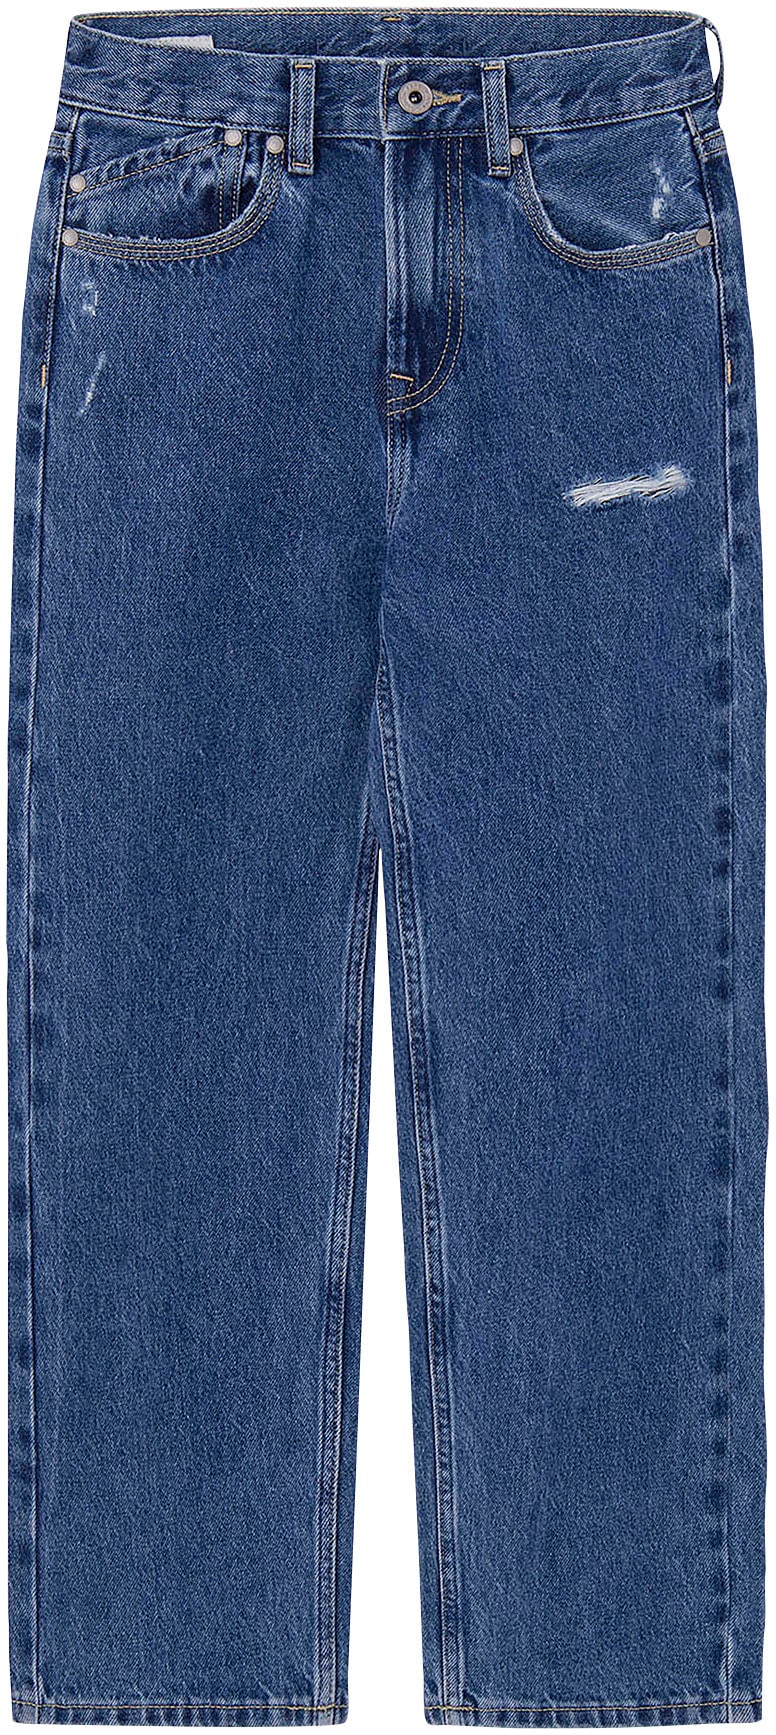 5-Pocket-Jeans »LOOSE REPAIR«, for BOYS